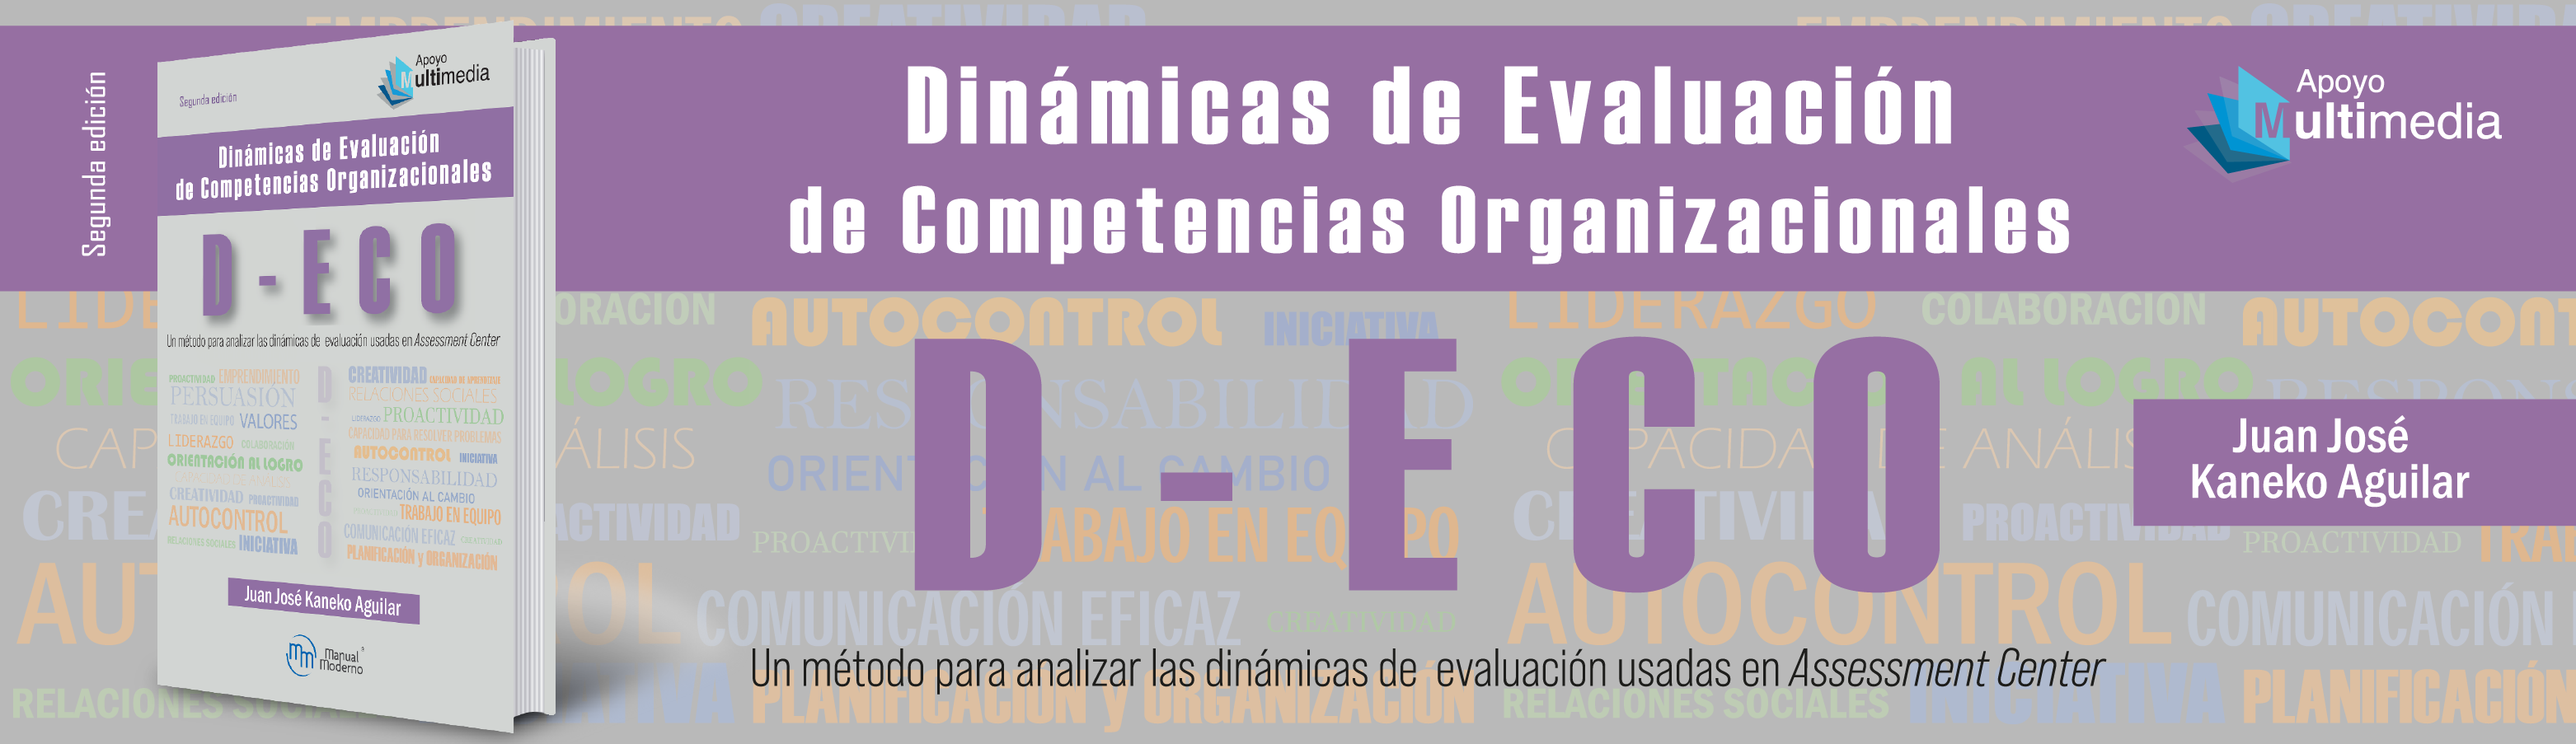 Dinámicas de evaluación de competencias organizacionales